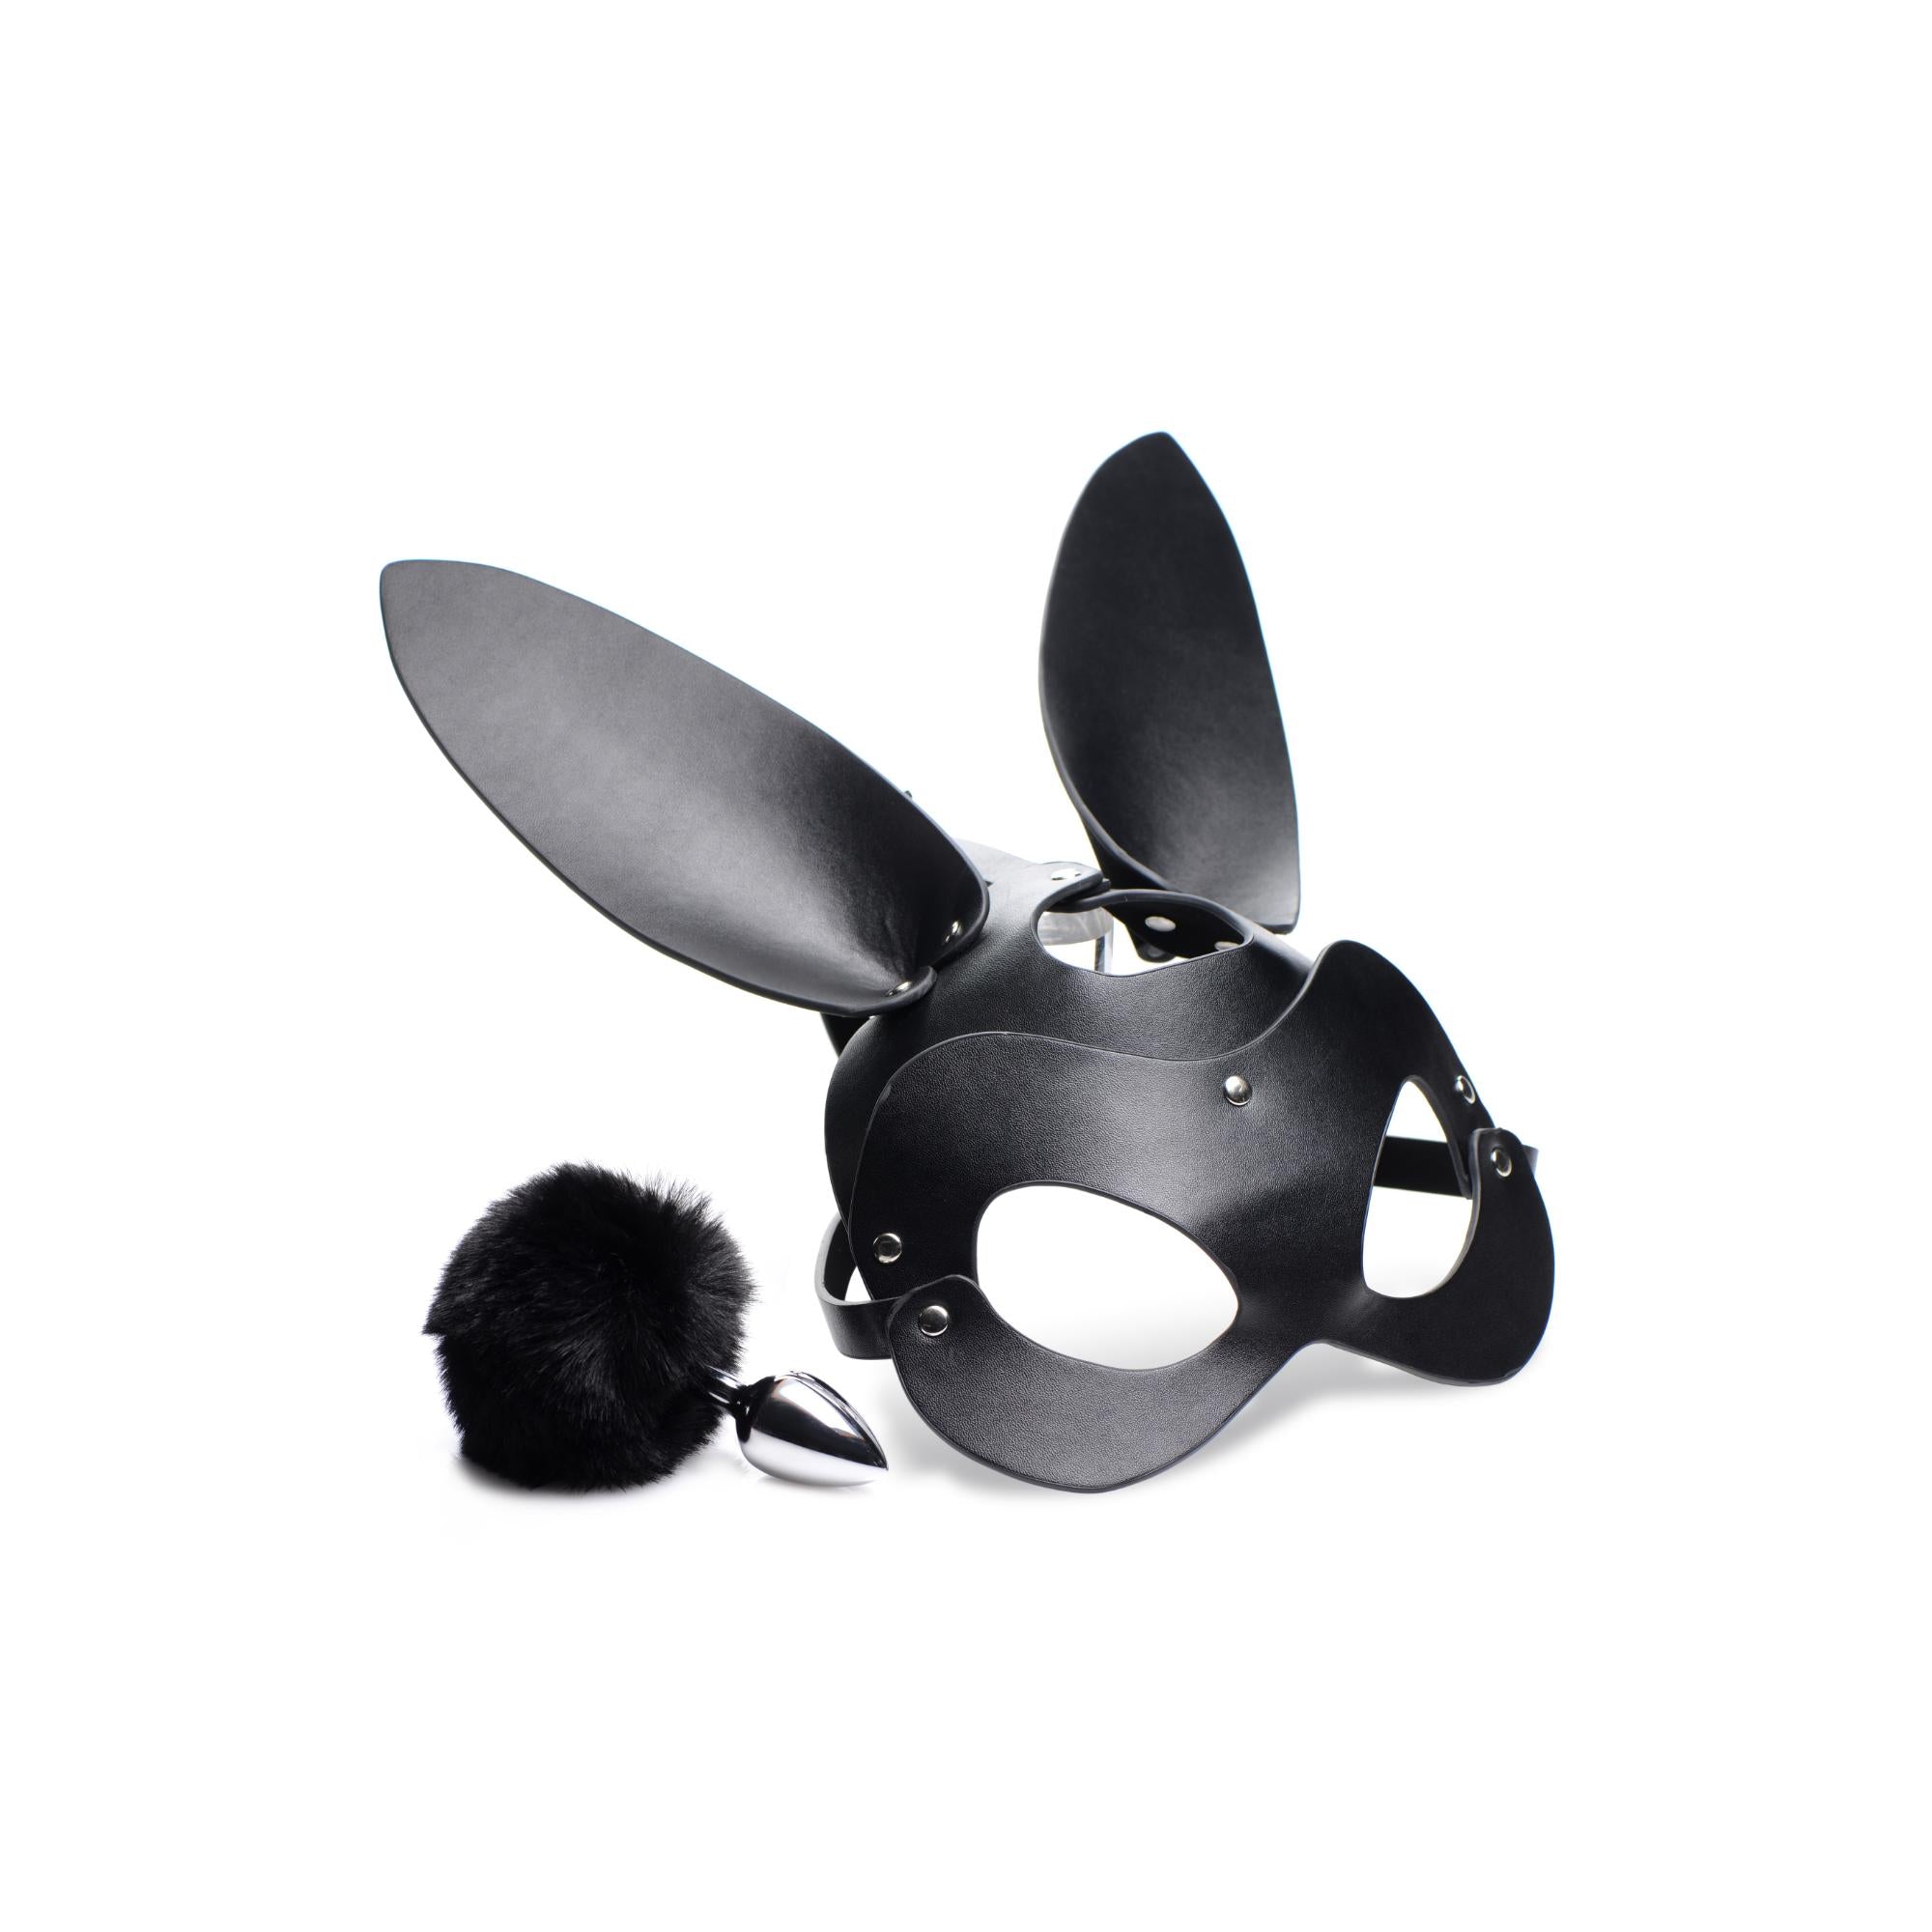 Tailz Bunny Tail Anal Plug and Mask Set